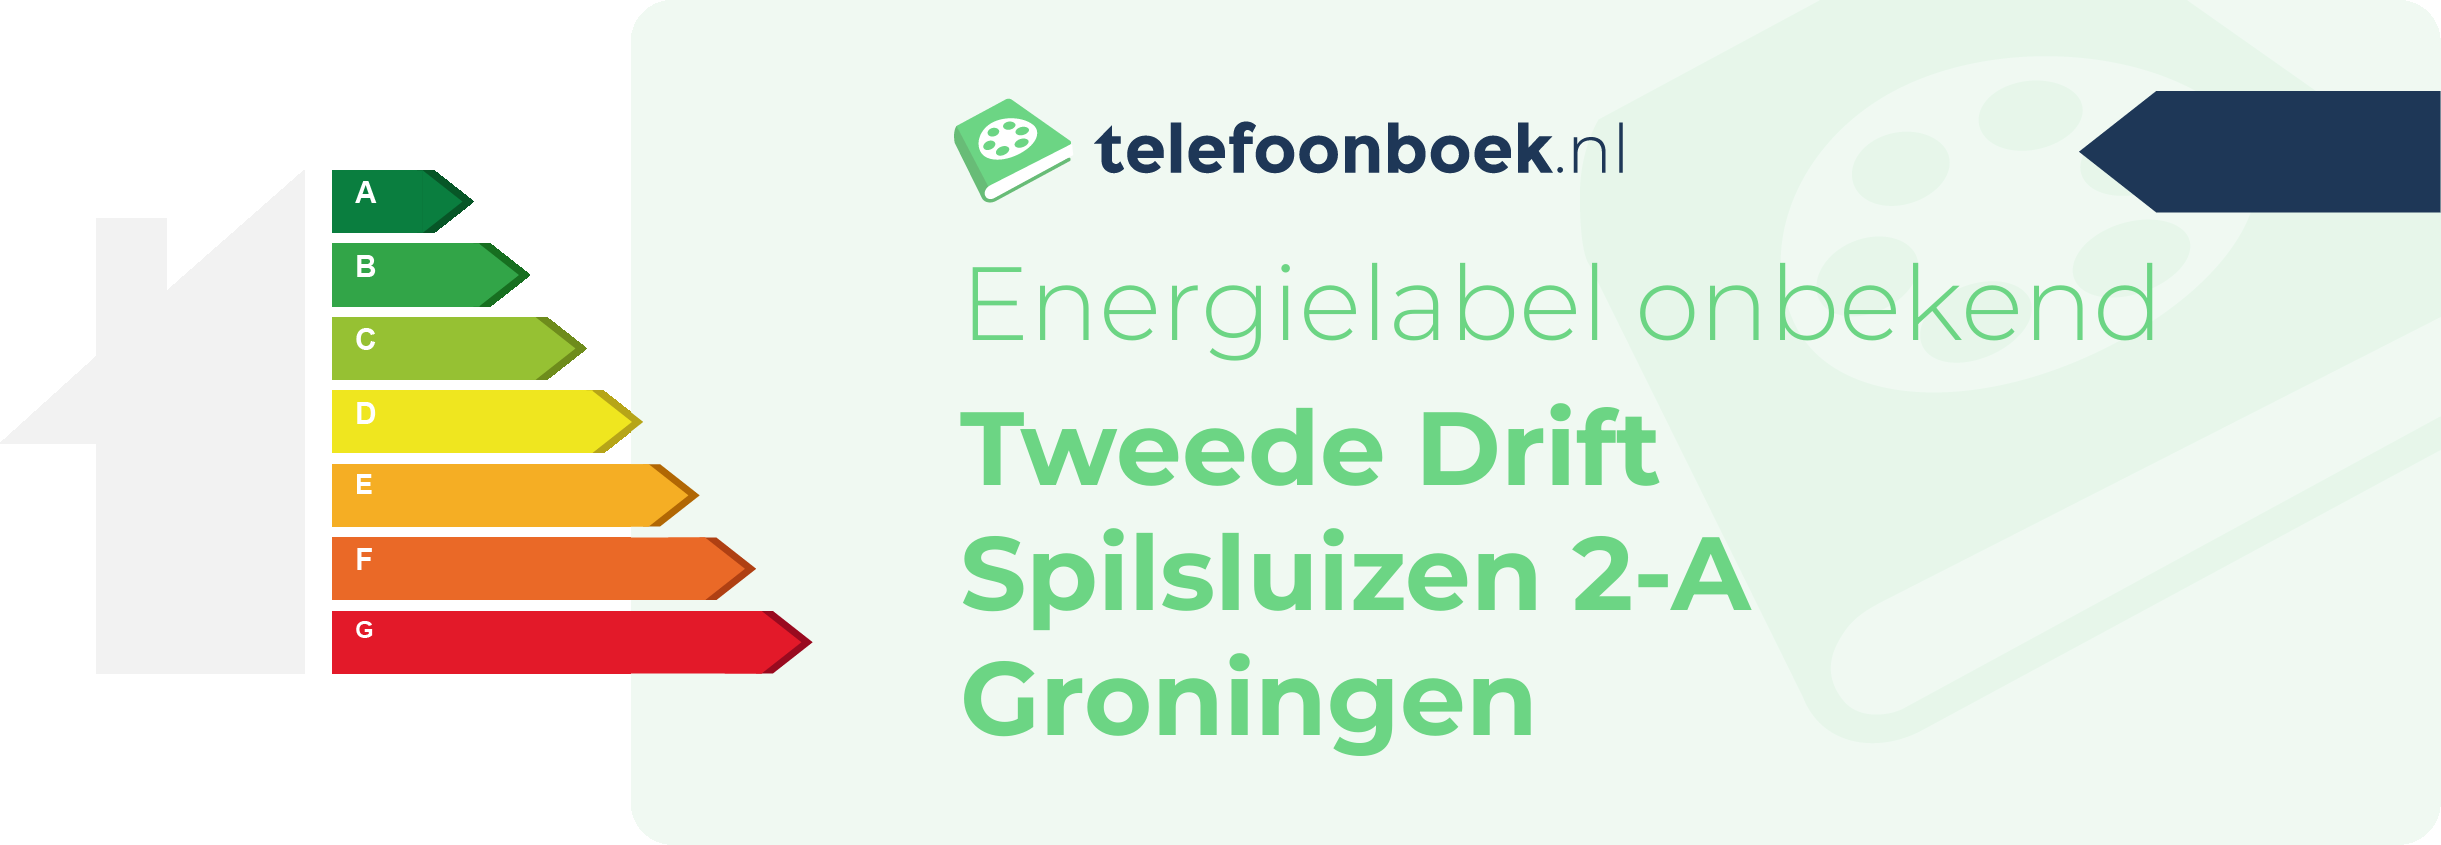 Energielabel Tweede Drift Spilsluizen 2-A Groningen